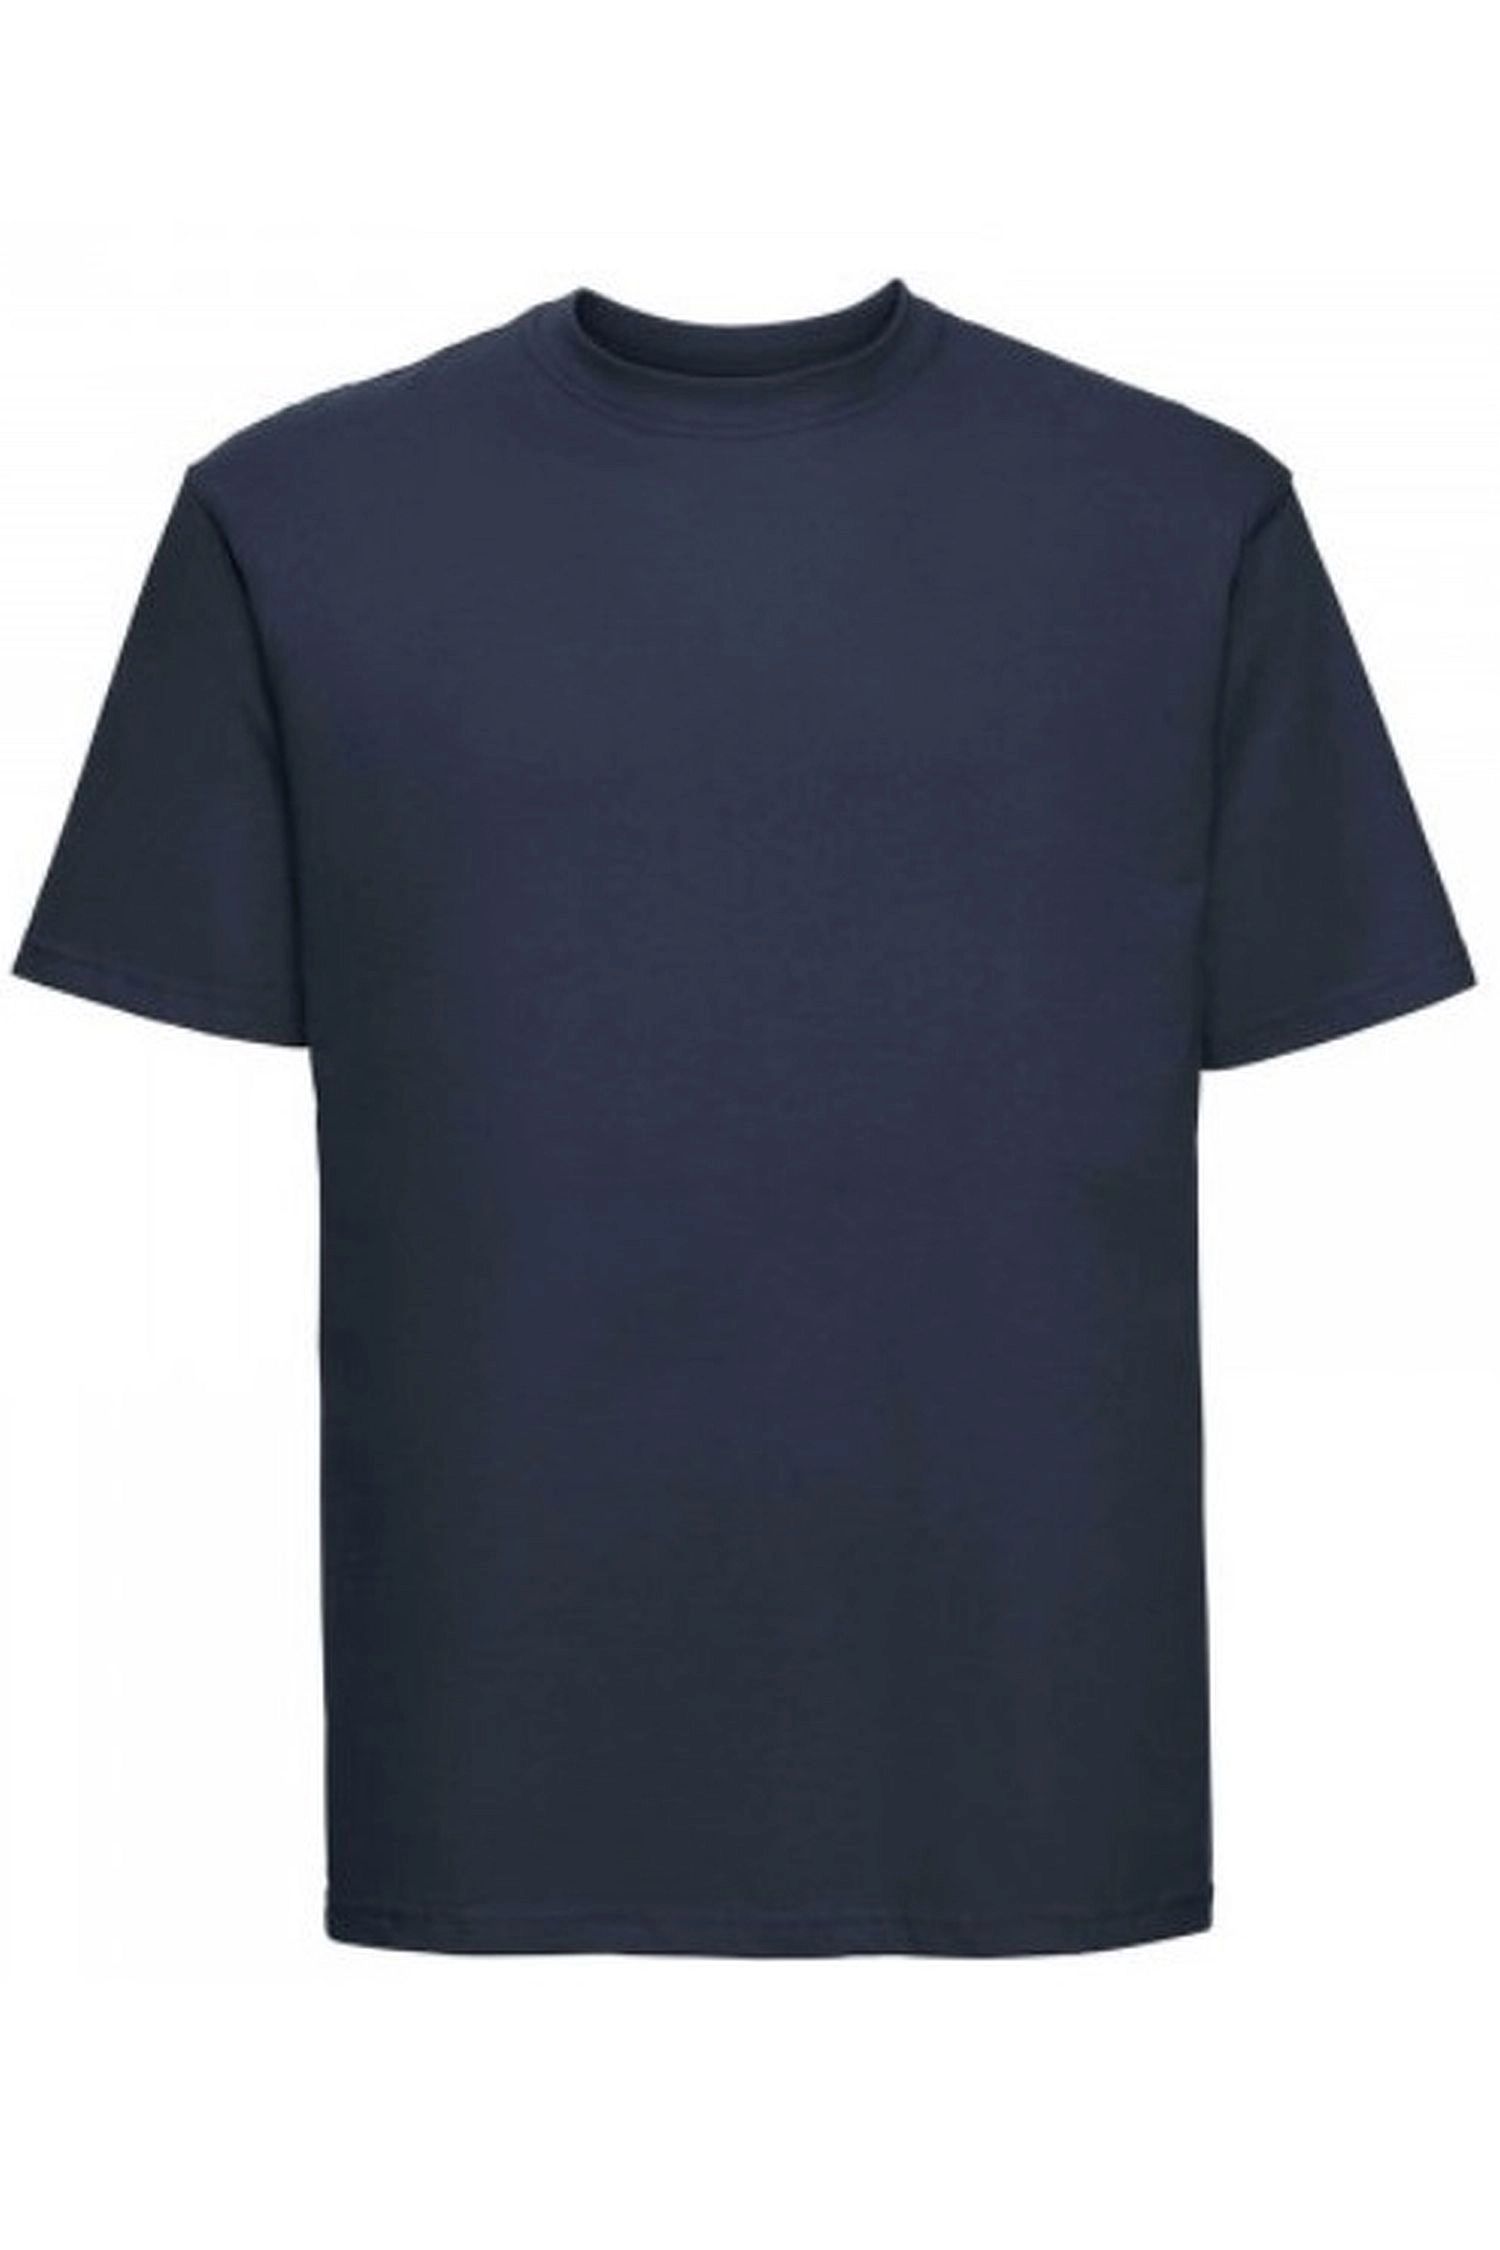 E-shop Pánske tričko 002 dark blue